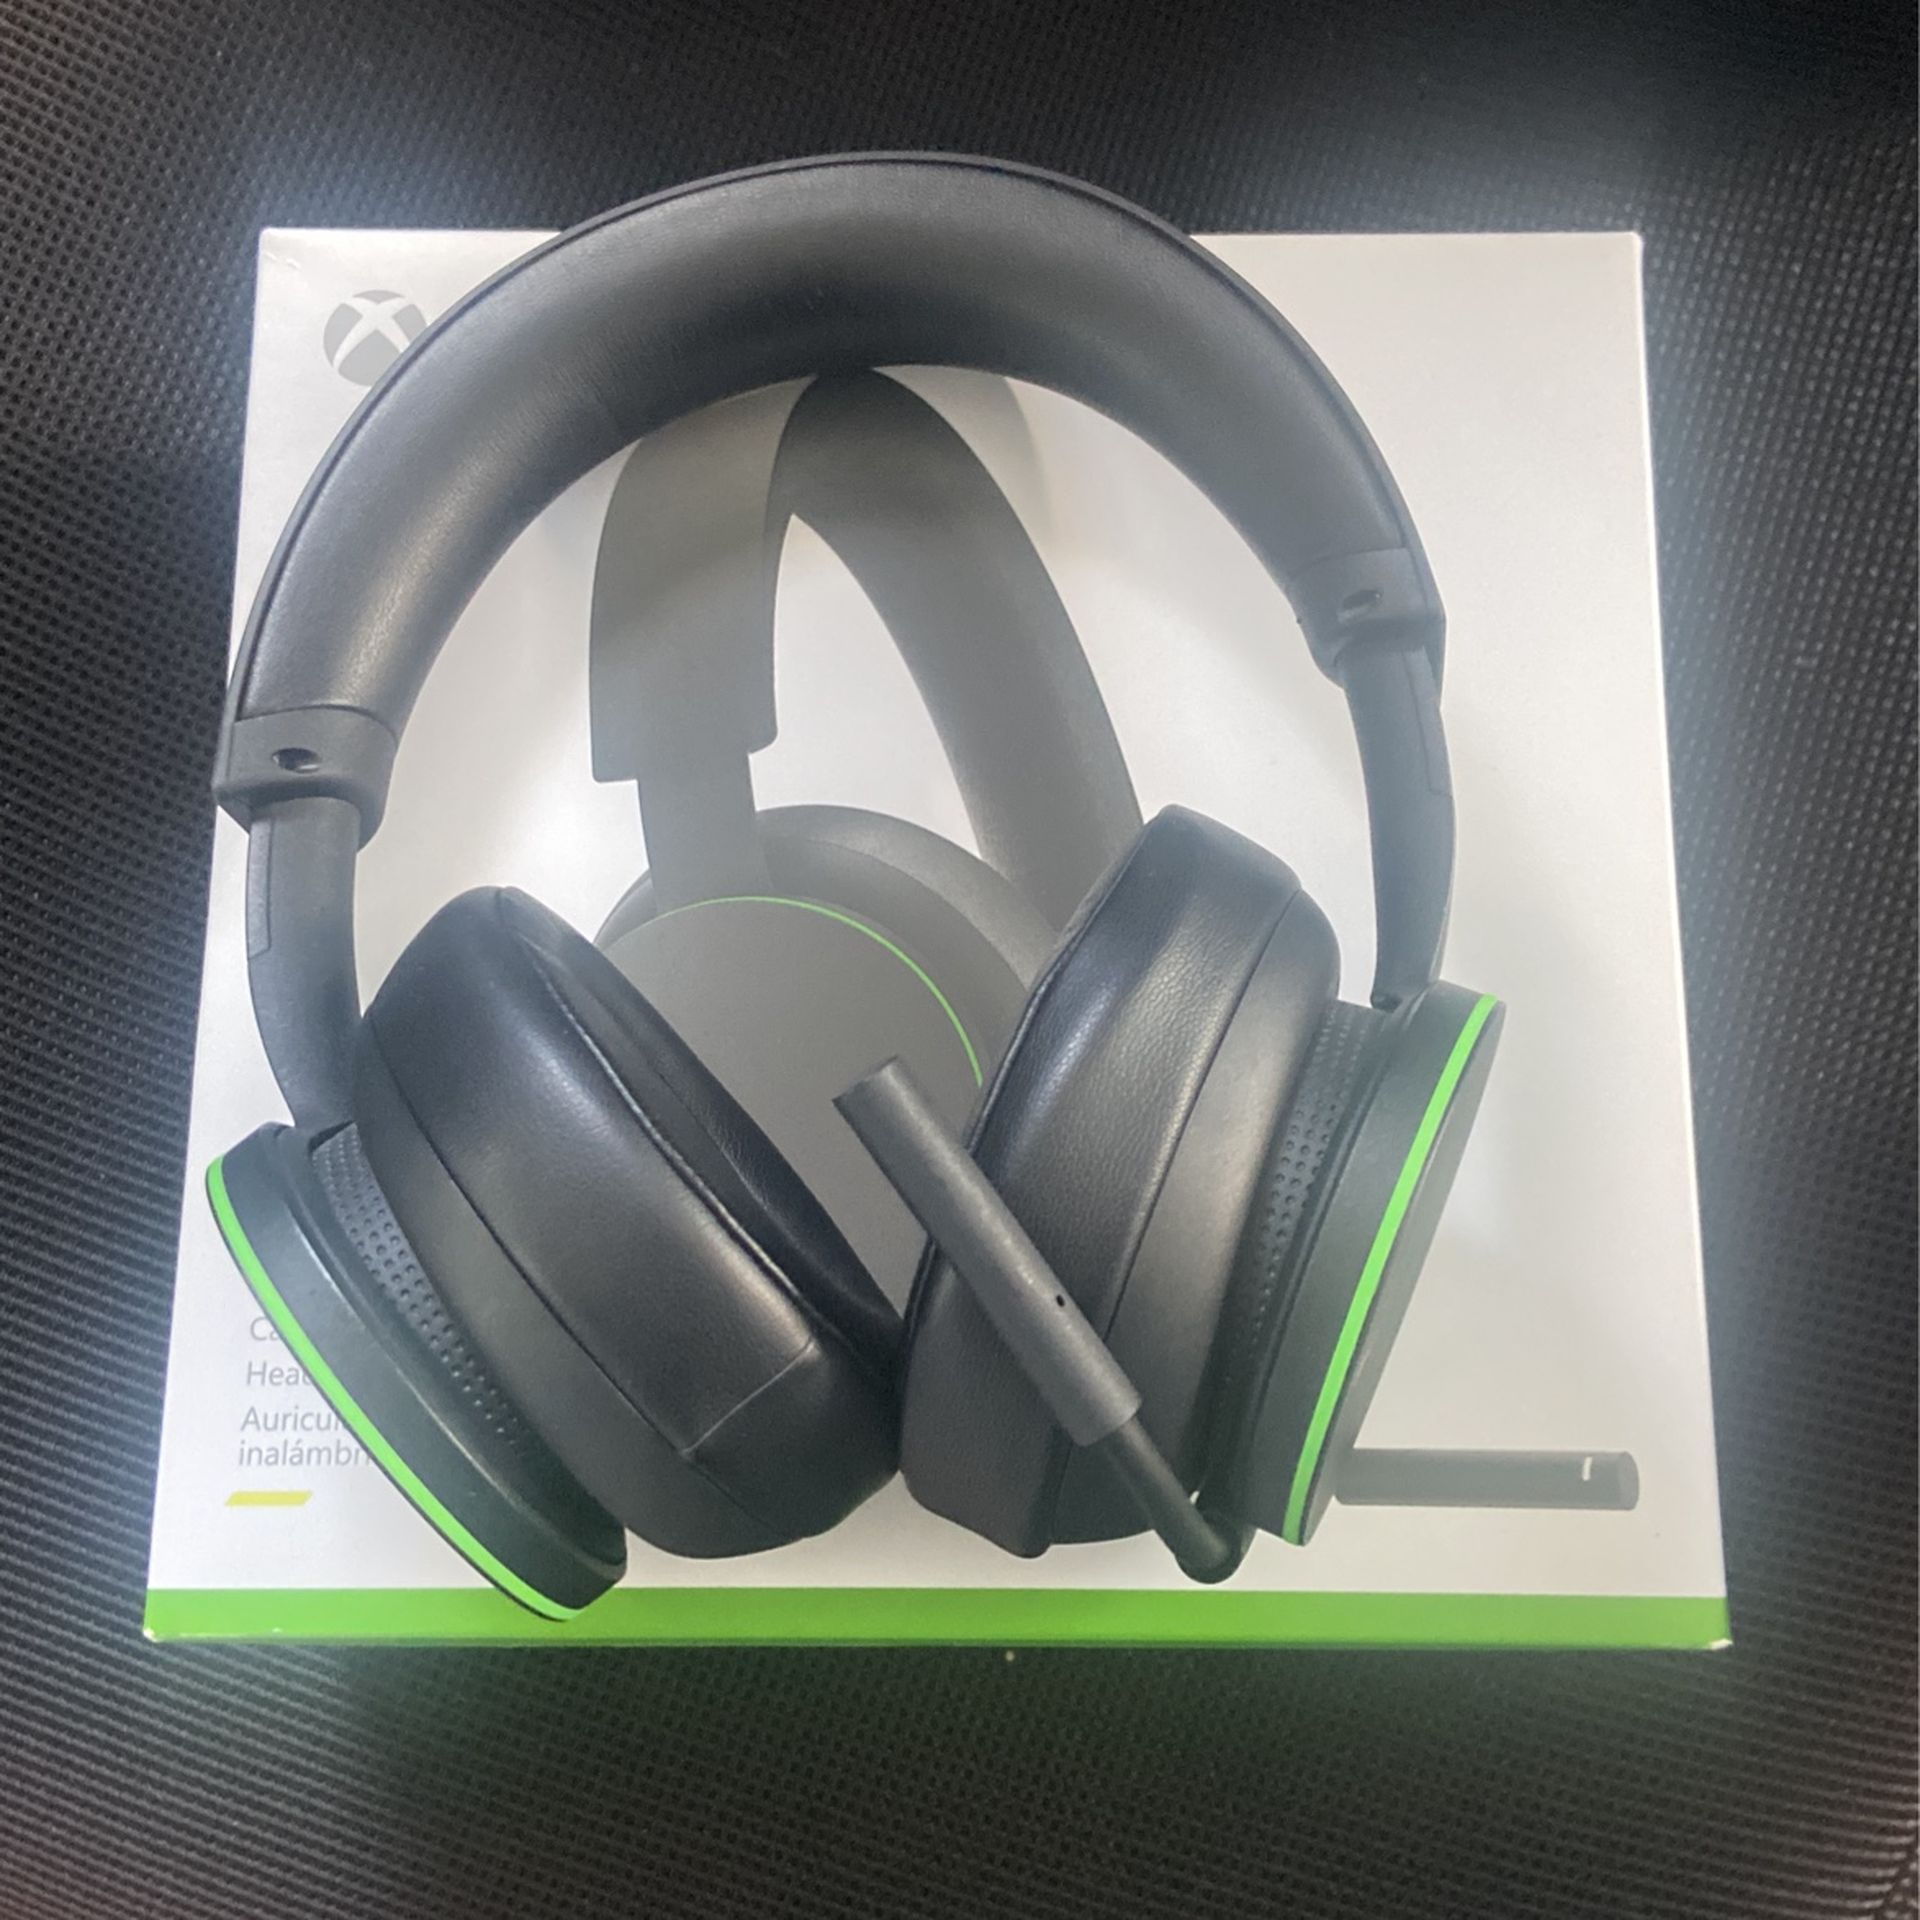  Xbox Wireless Headset 